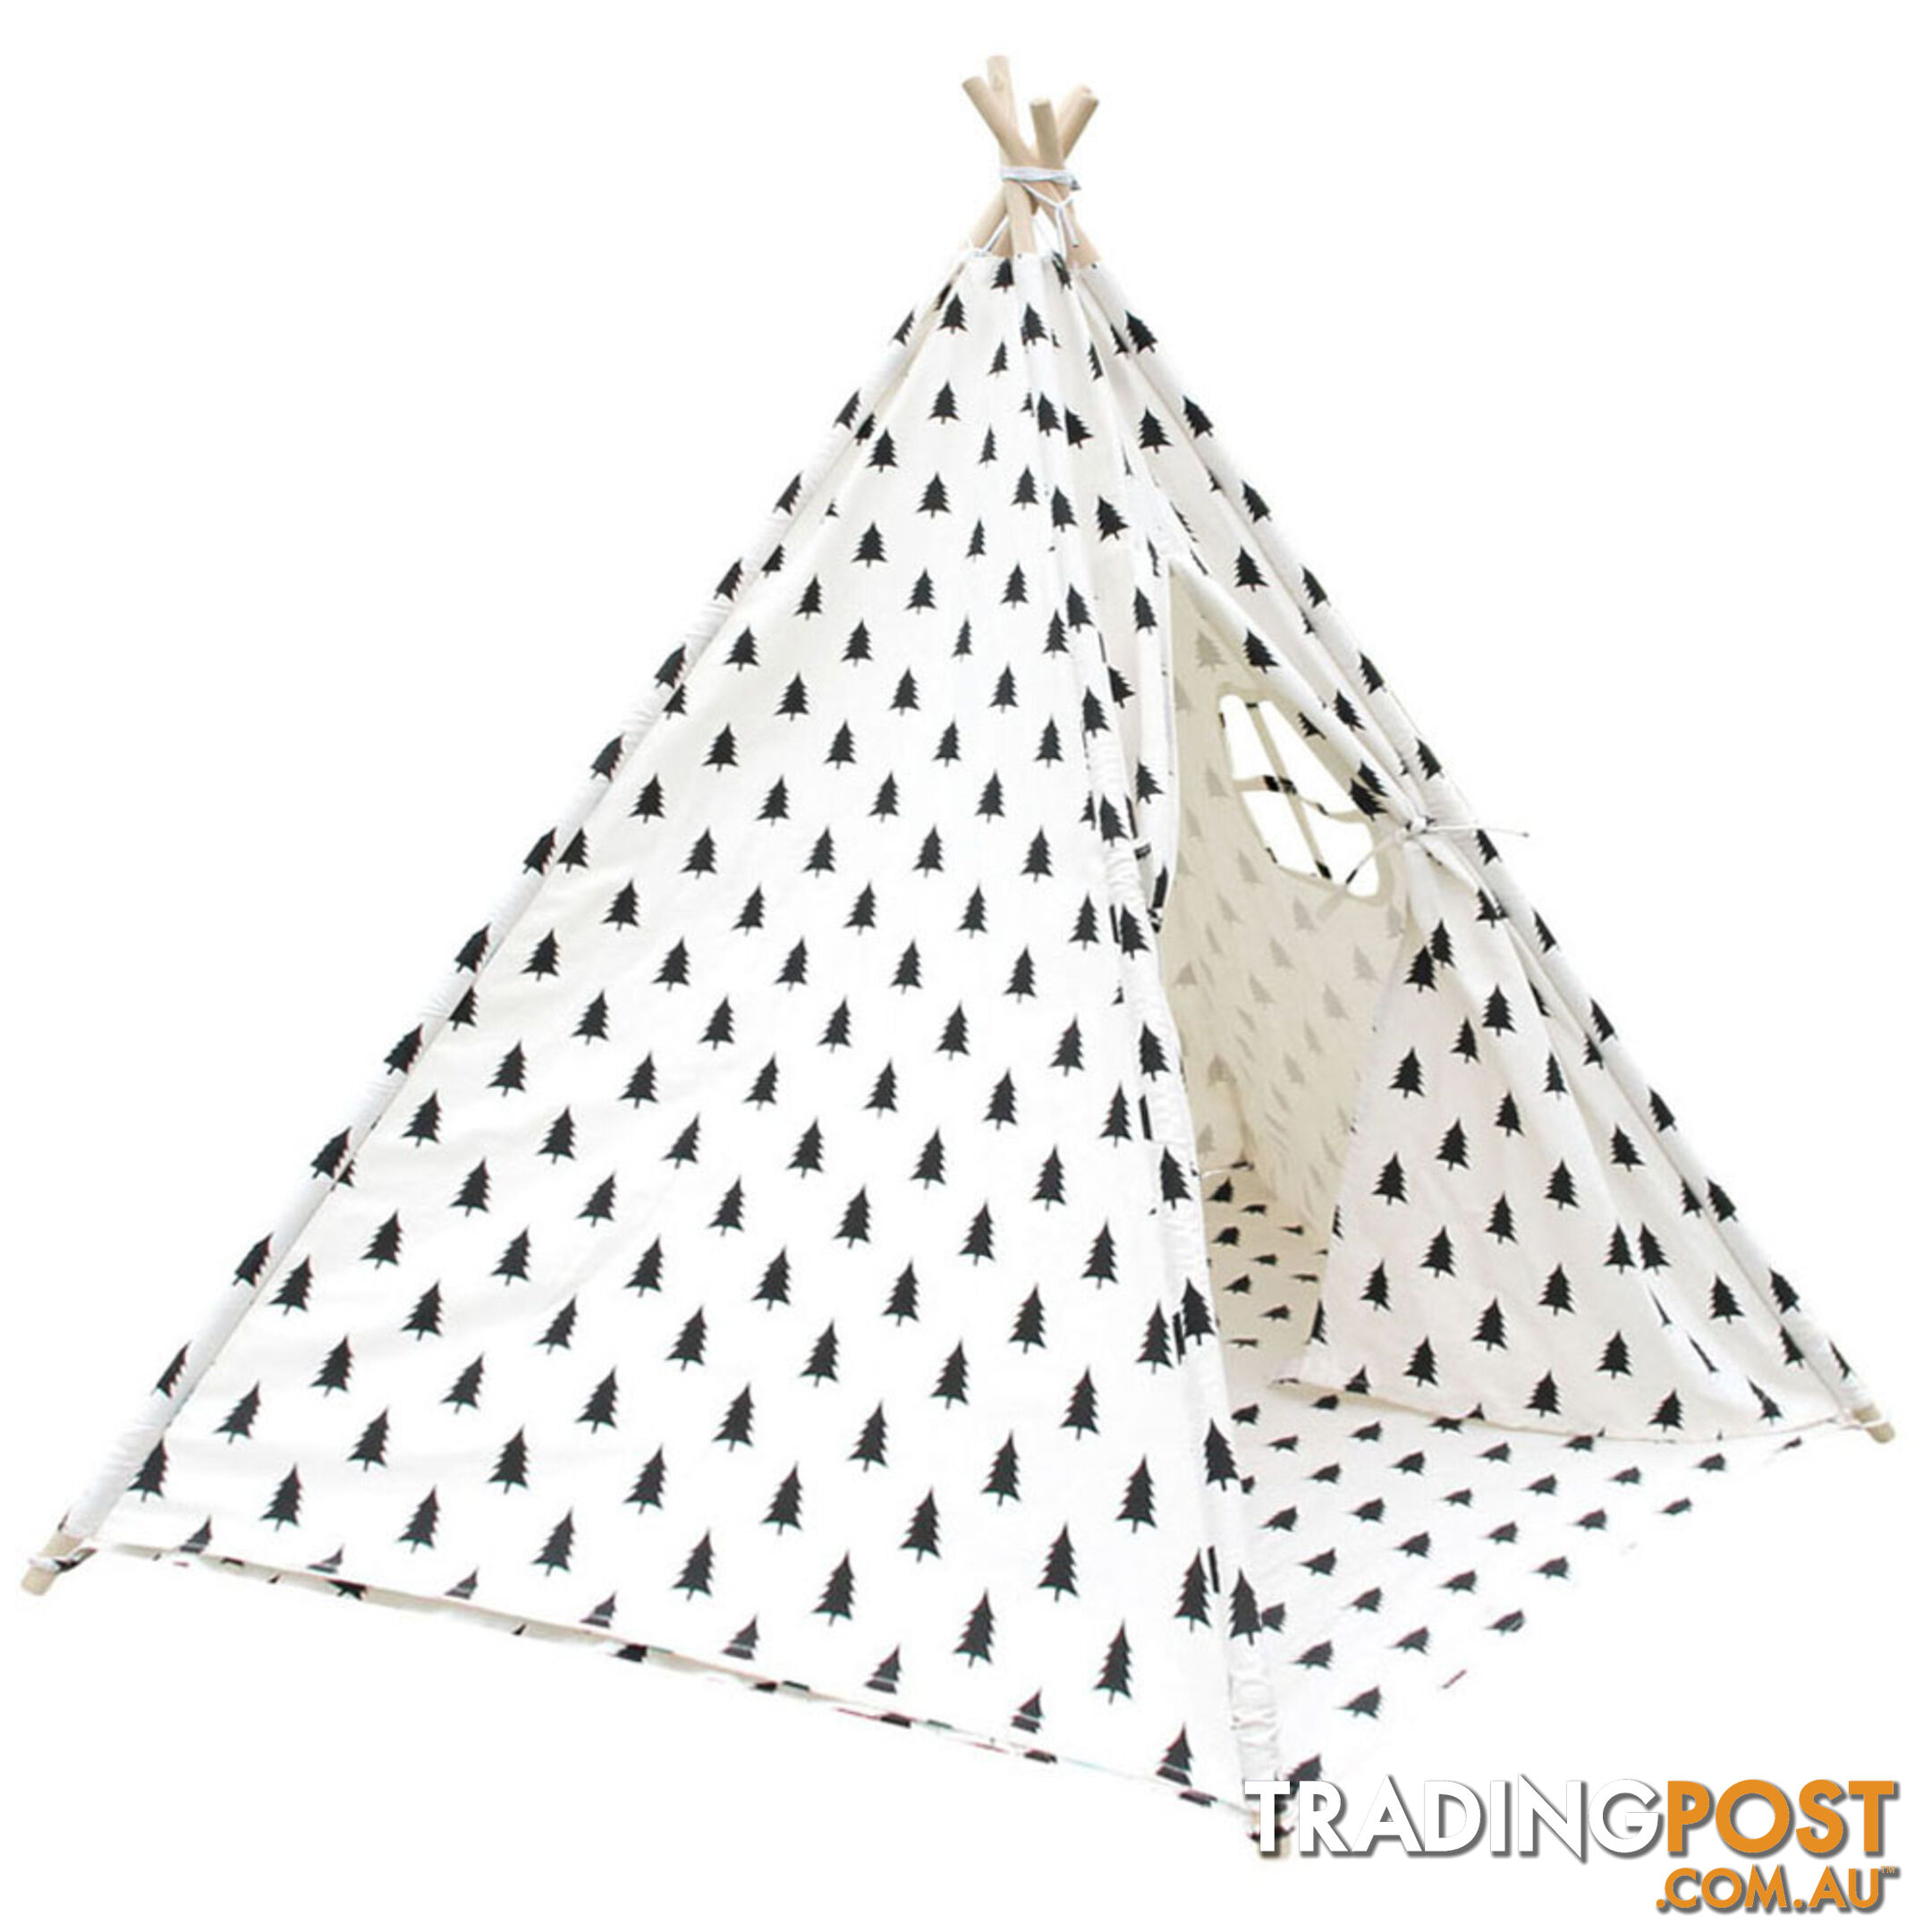 5 Poles Teepee Tent w/ Storage Bag Black White